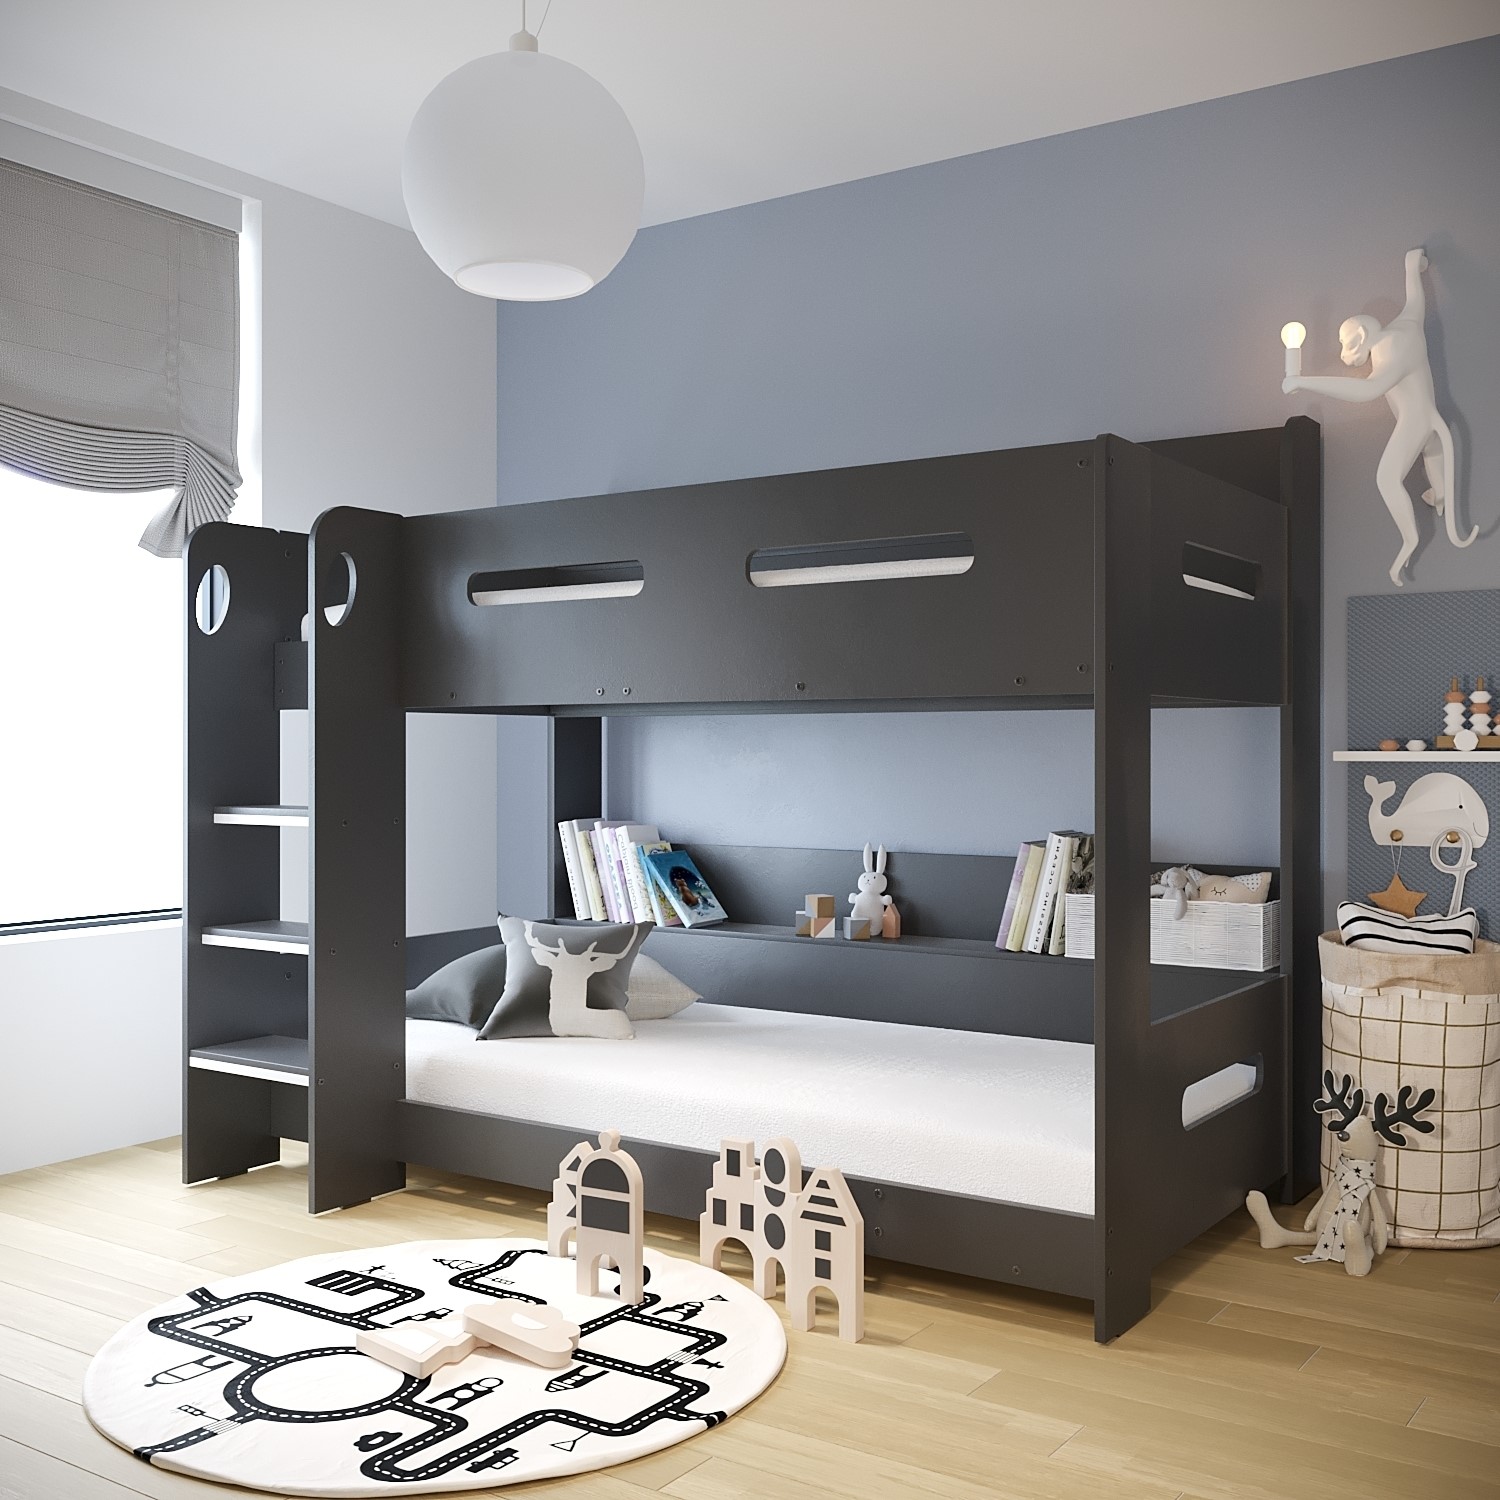 Dark Grey Bunk Bed with Shelves - Sky